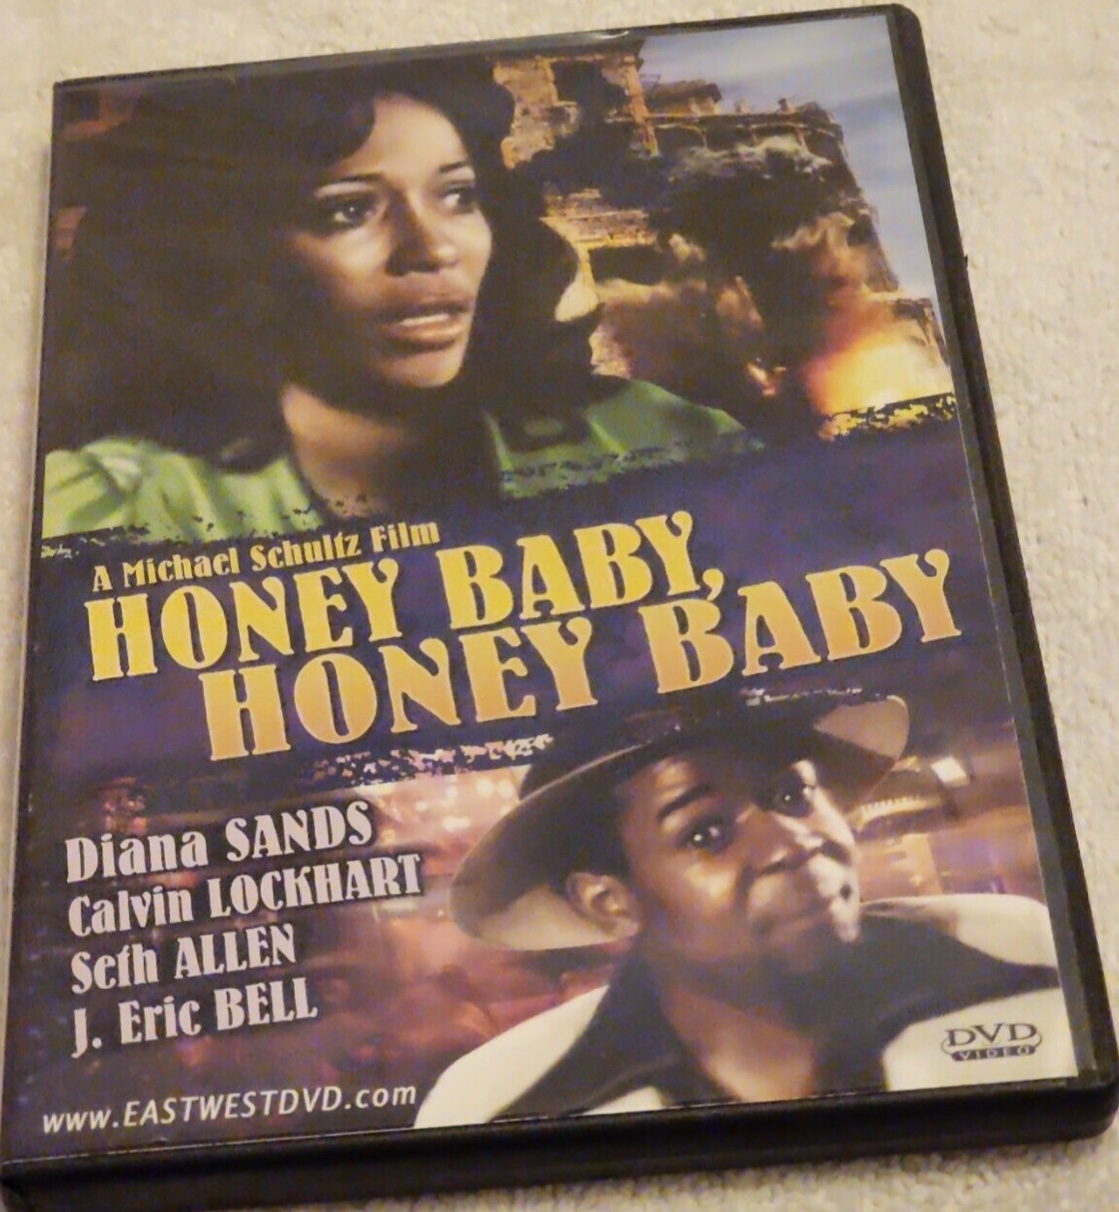 Honeybaby, Honeybaby (1974) Screenshot 3 